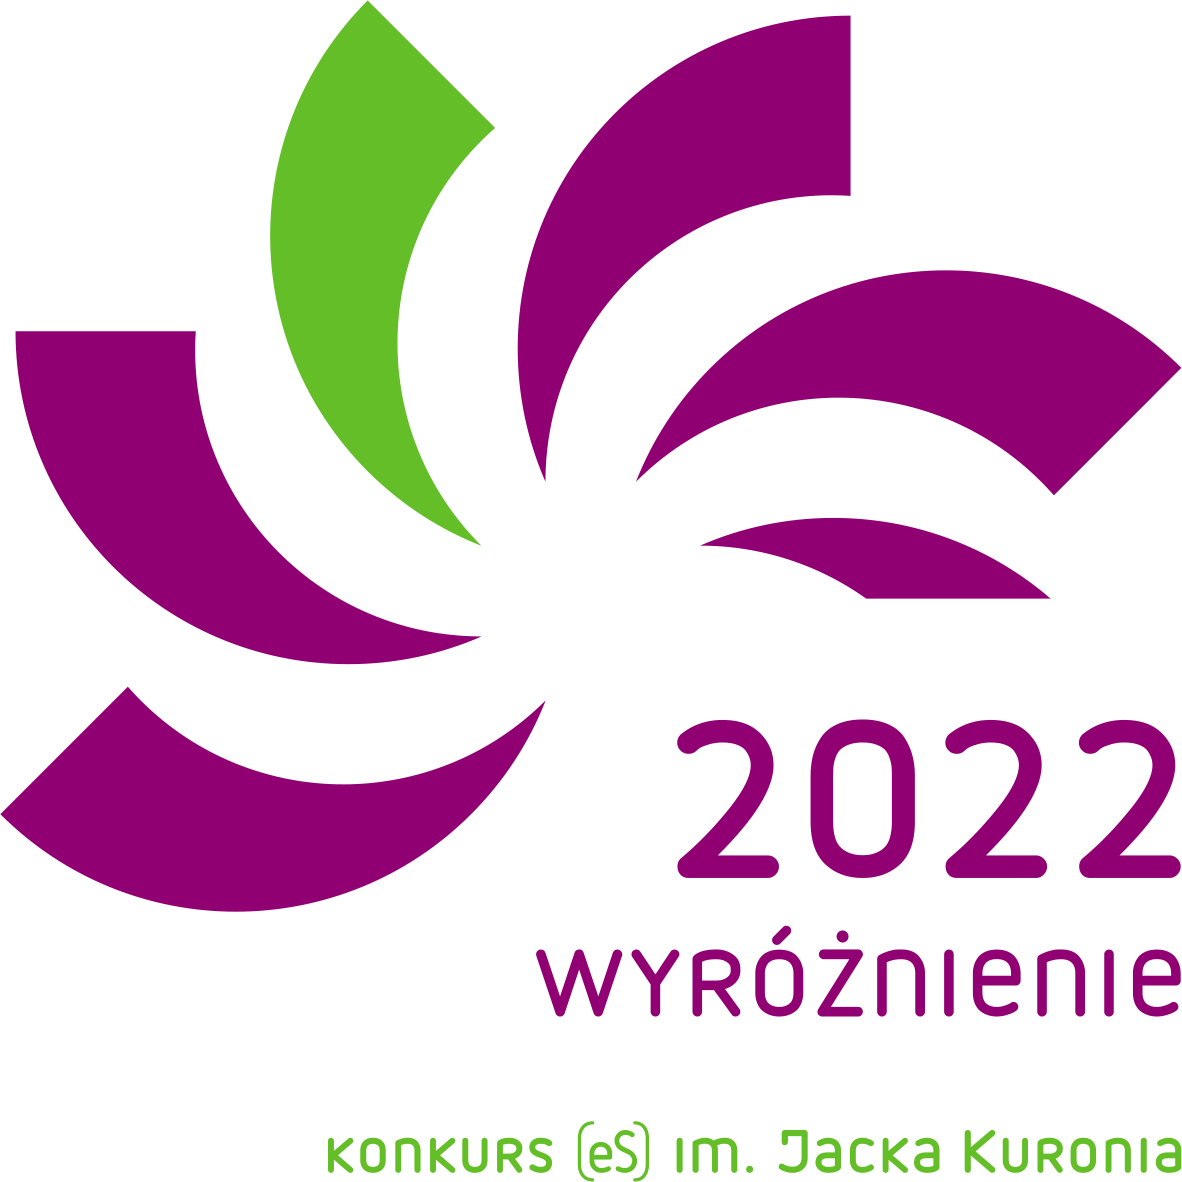 Logo Wyróżnienie 2022. Konkurs imienia Jacka Kuronia